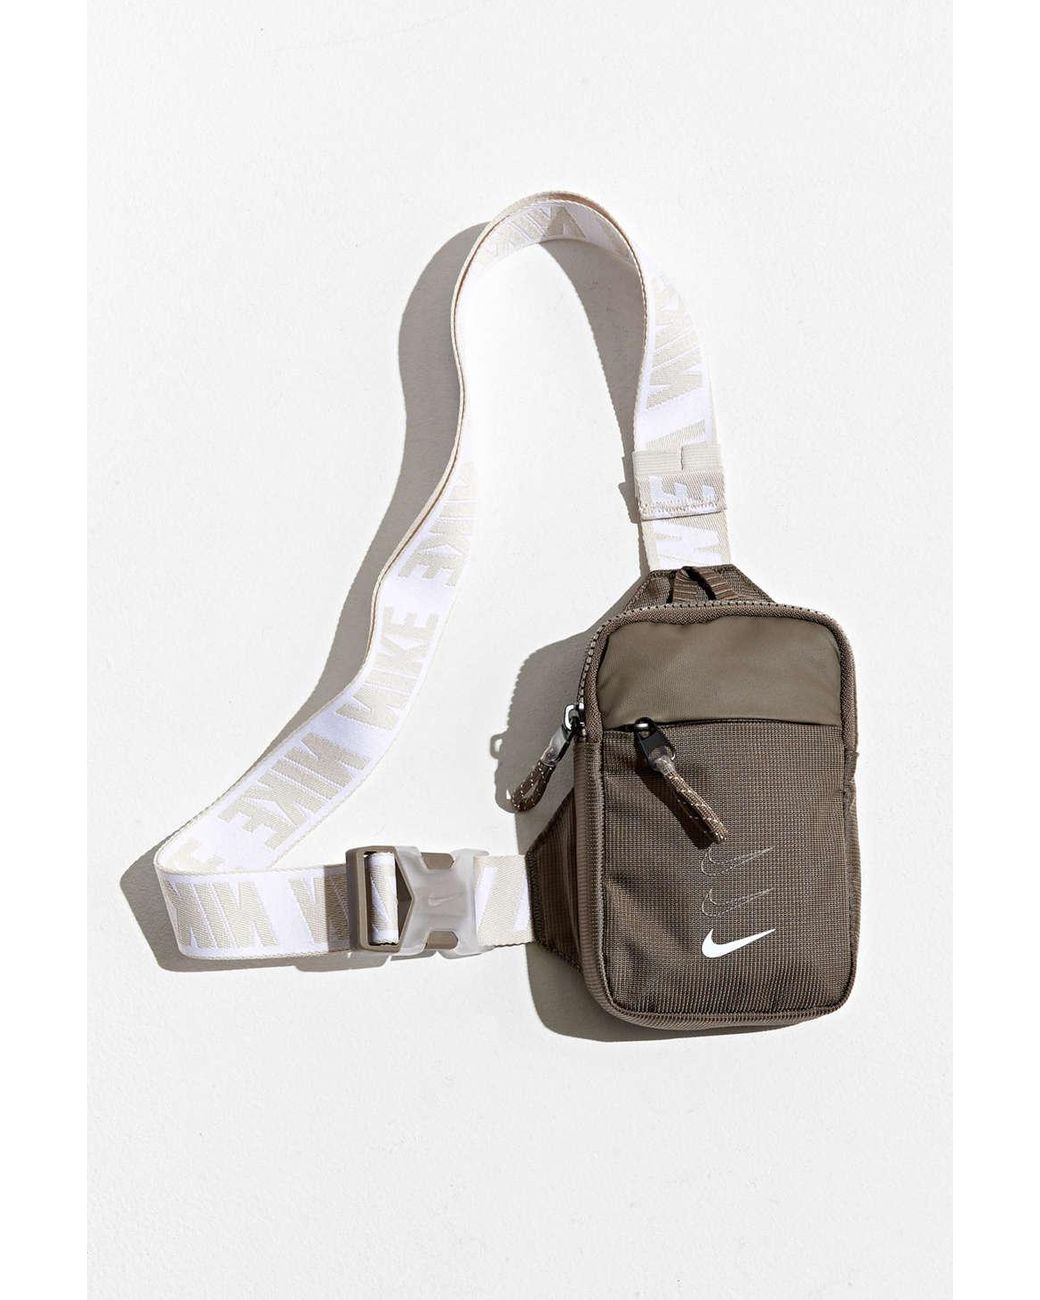 TSD Brand Tapa Sling Bag Backpack 049-2234 - JCPenney